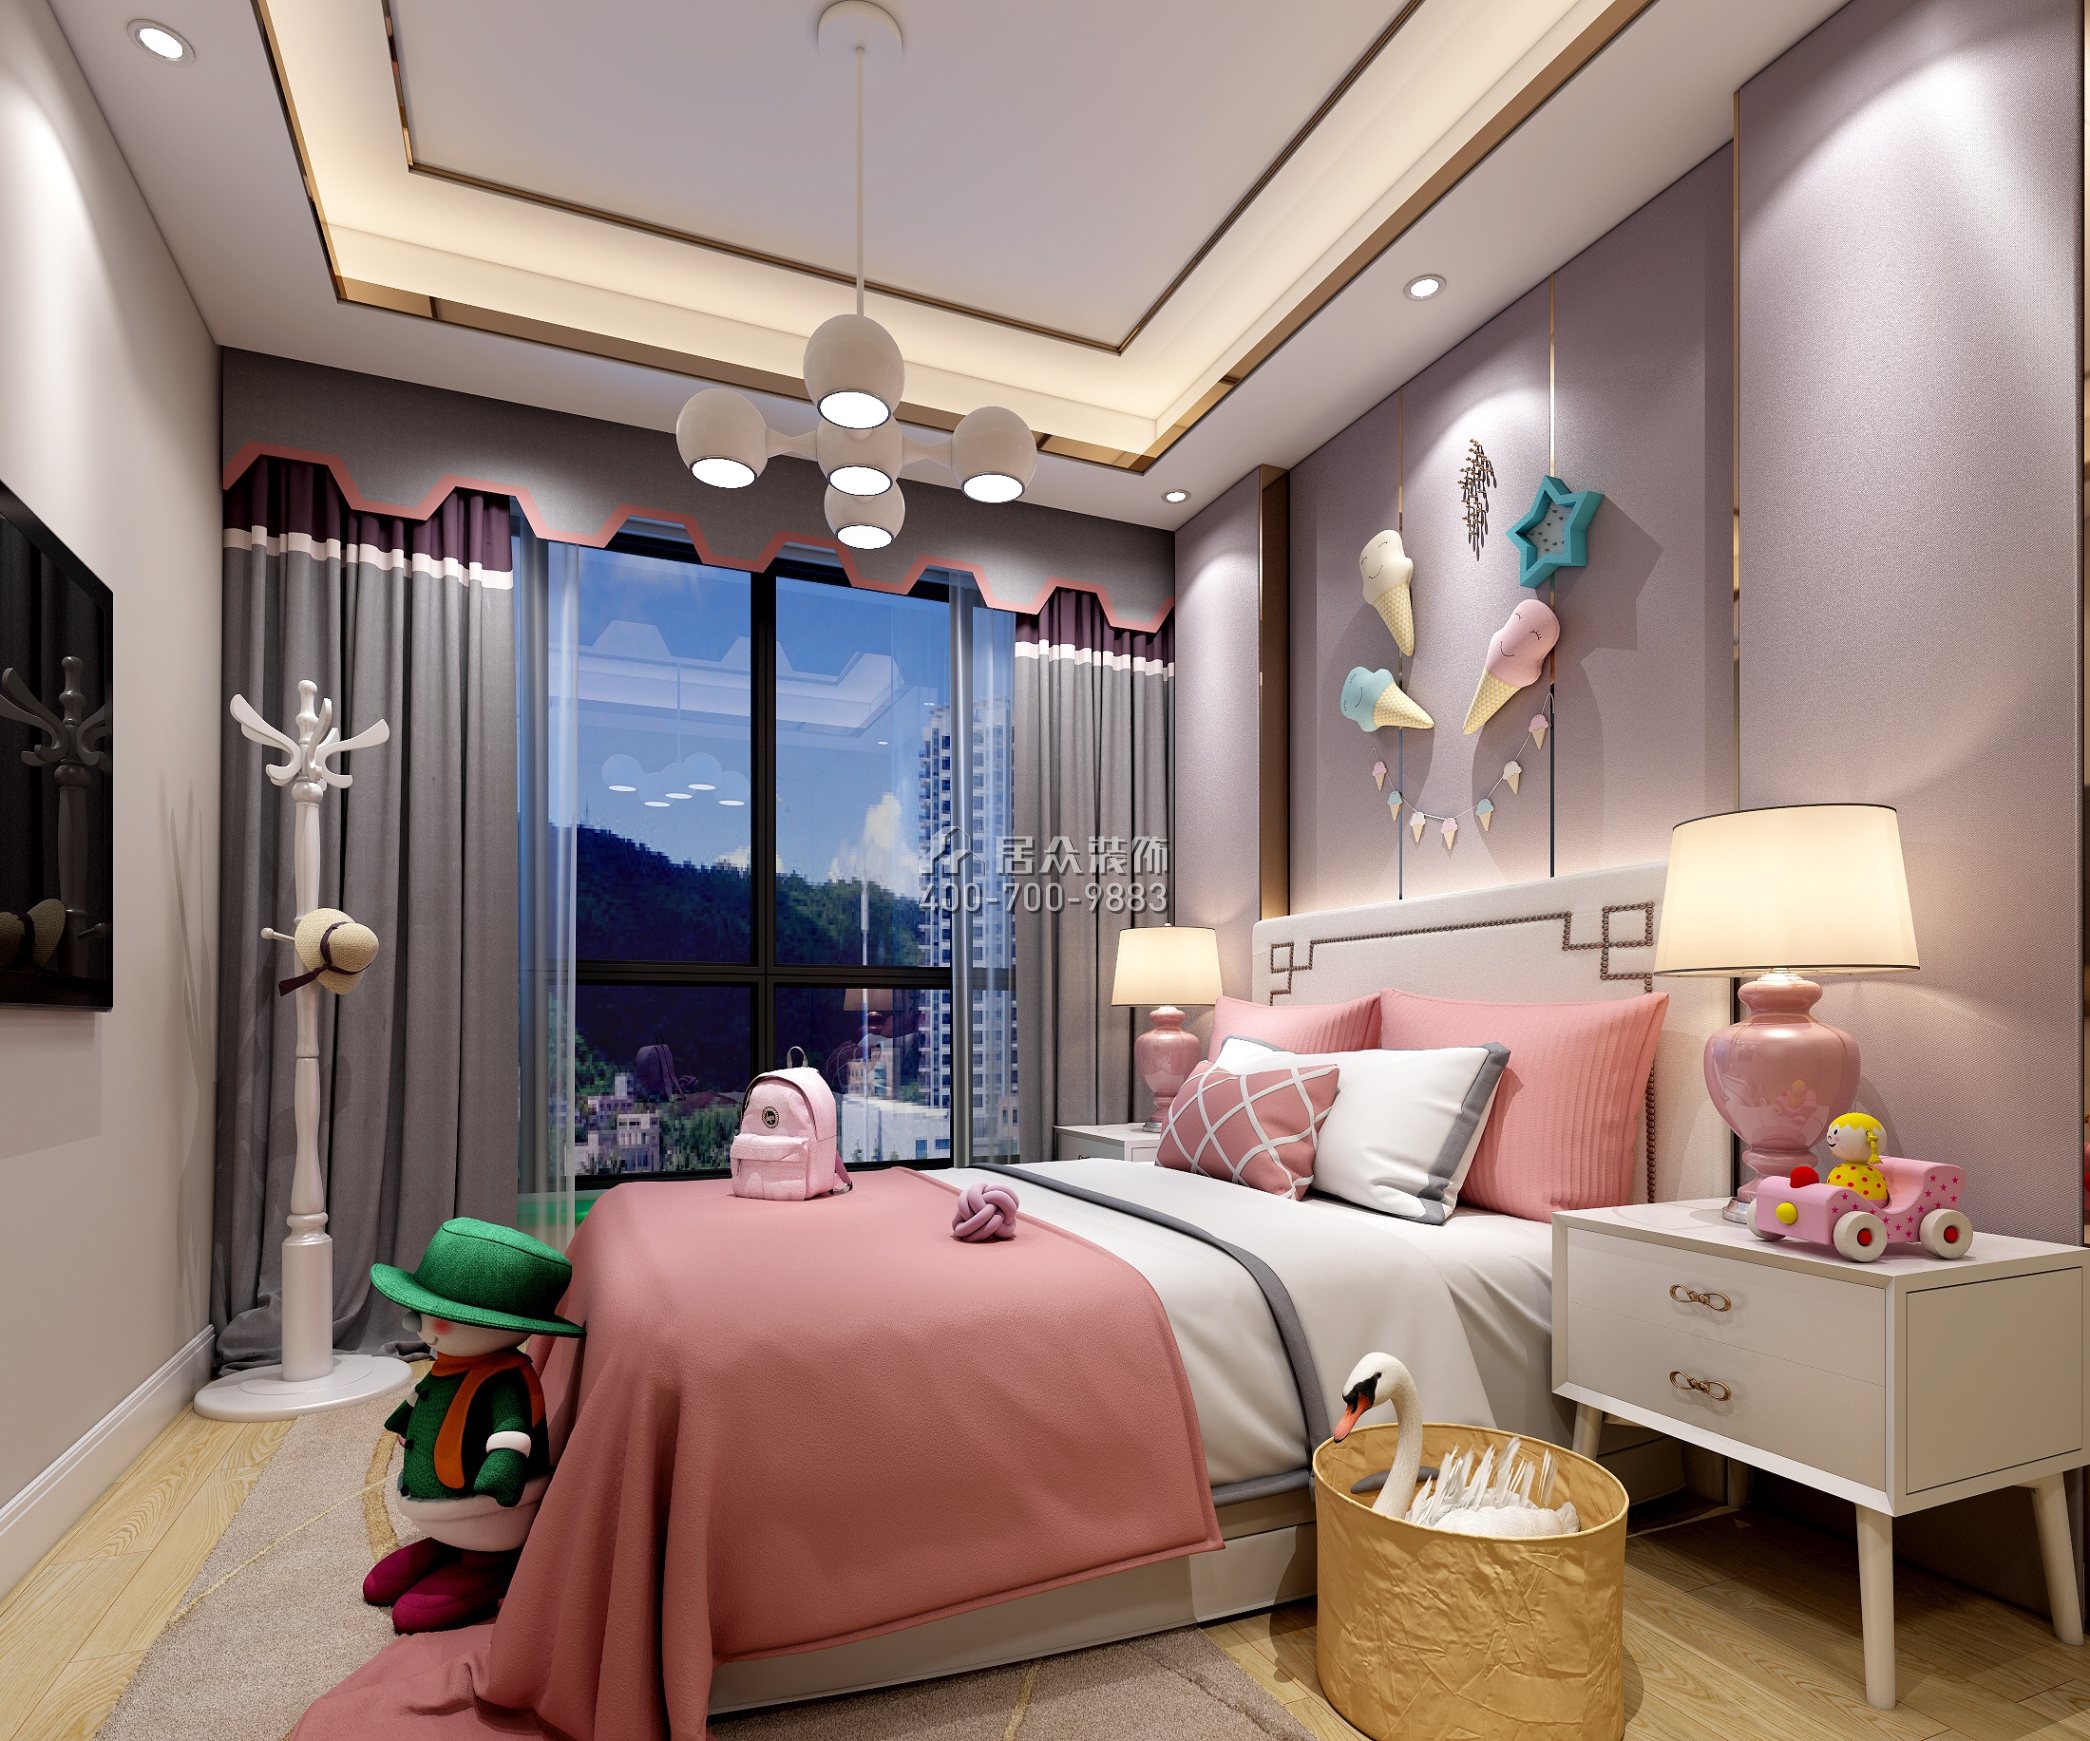 星河银湖谷180平方米中式风格平层户型儿童房装修效果图